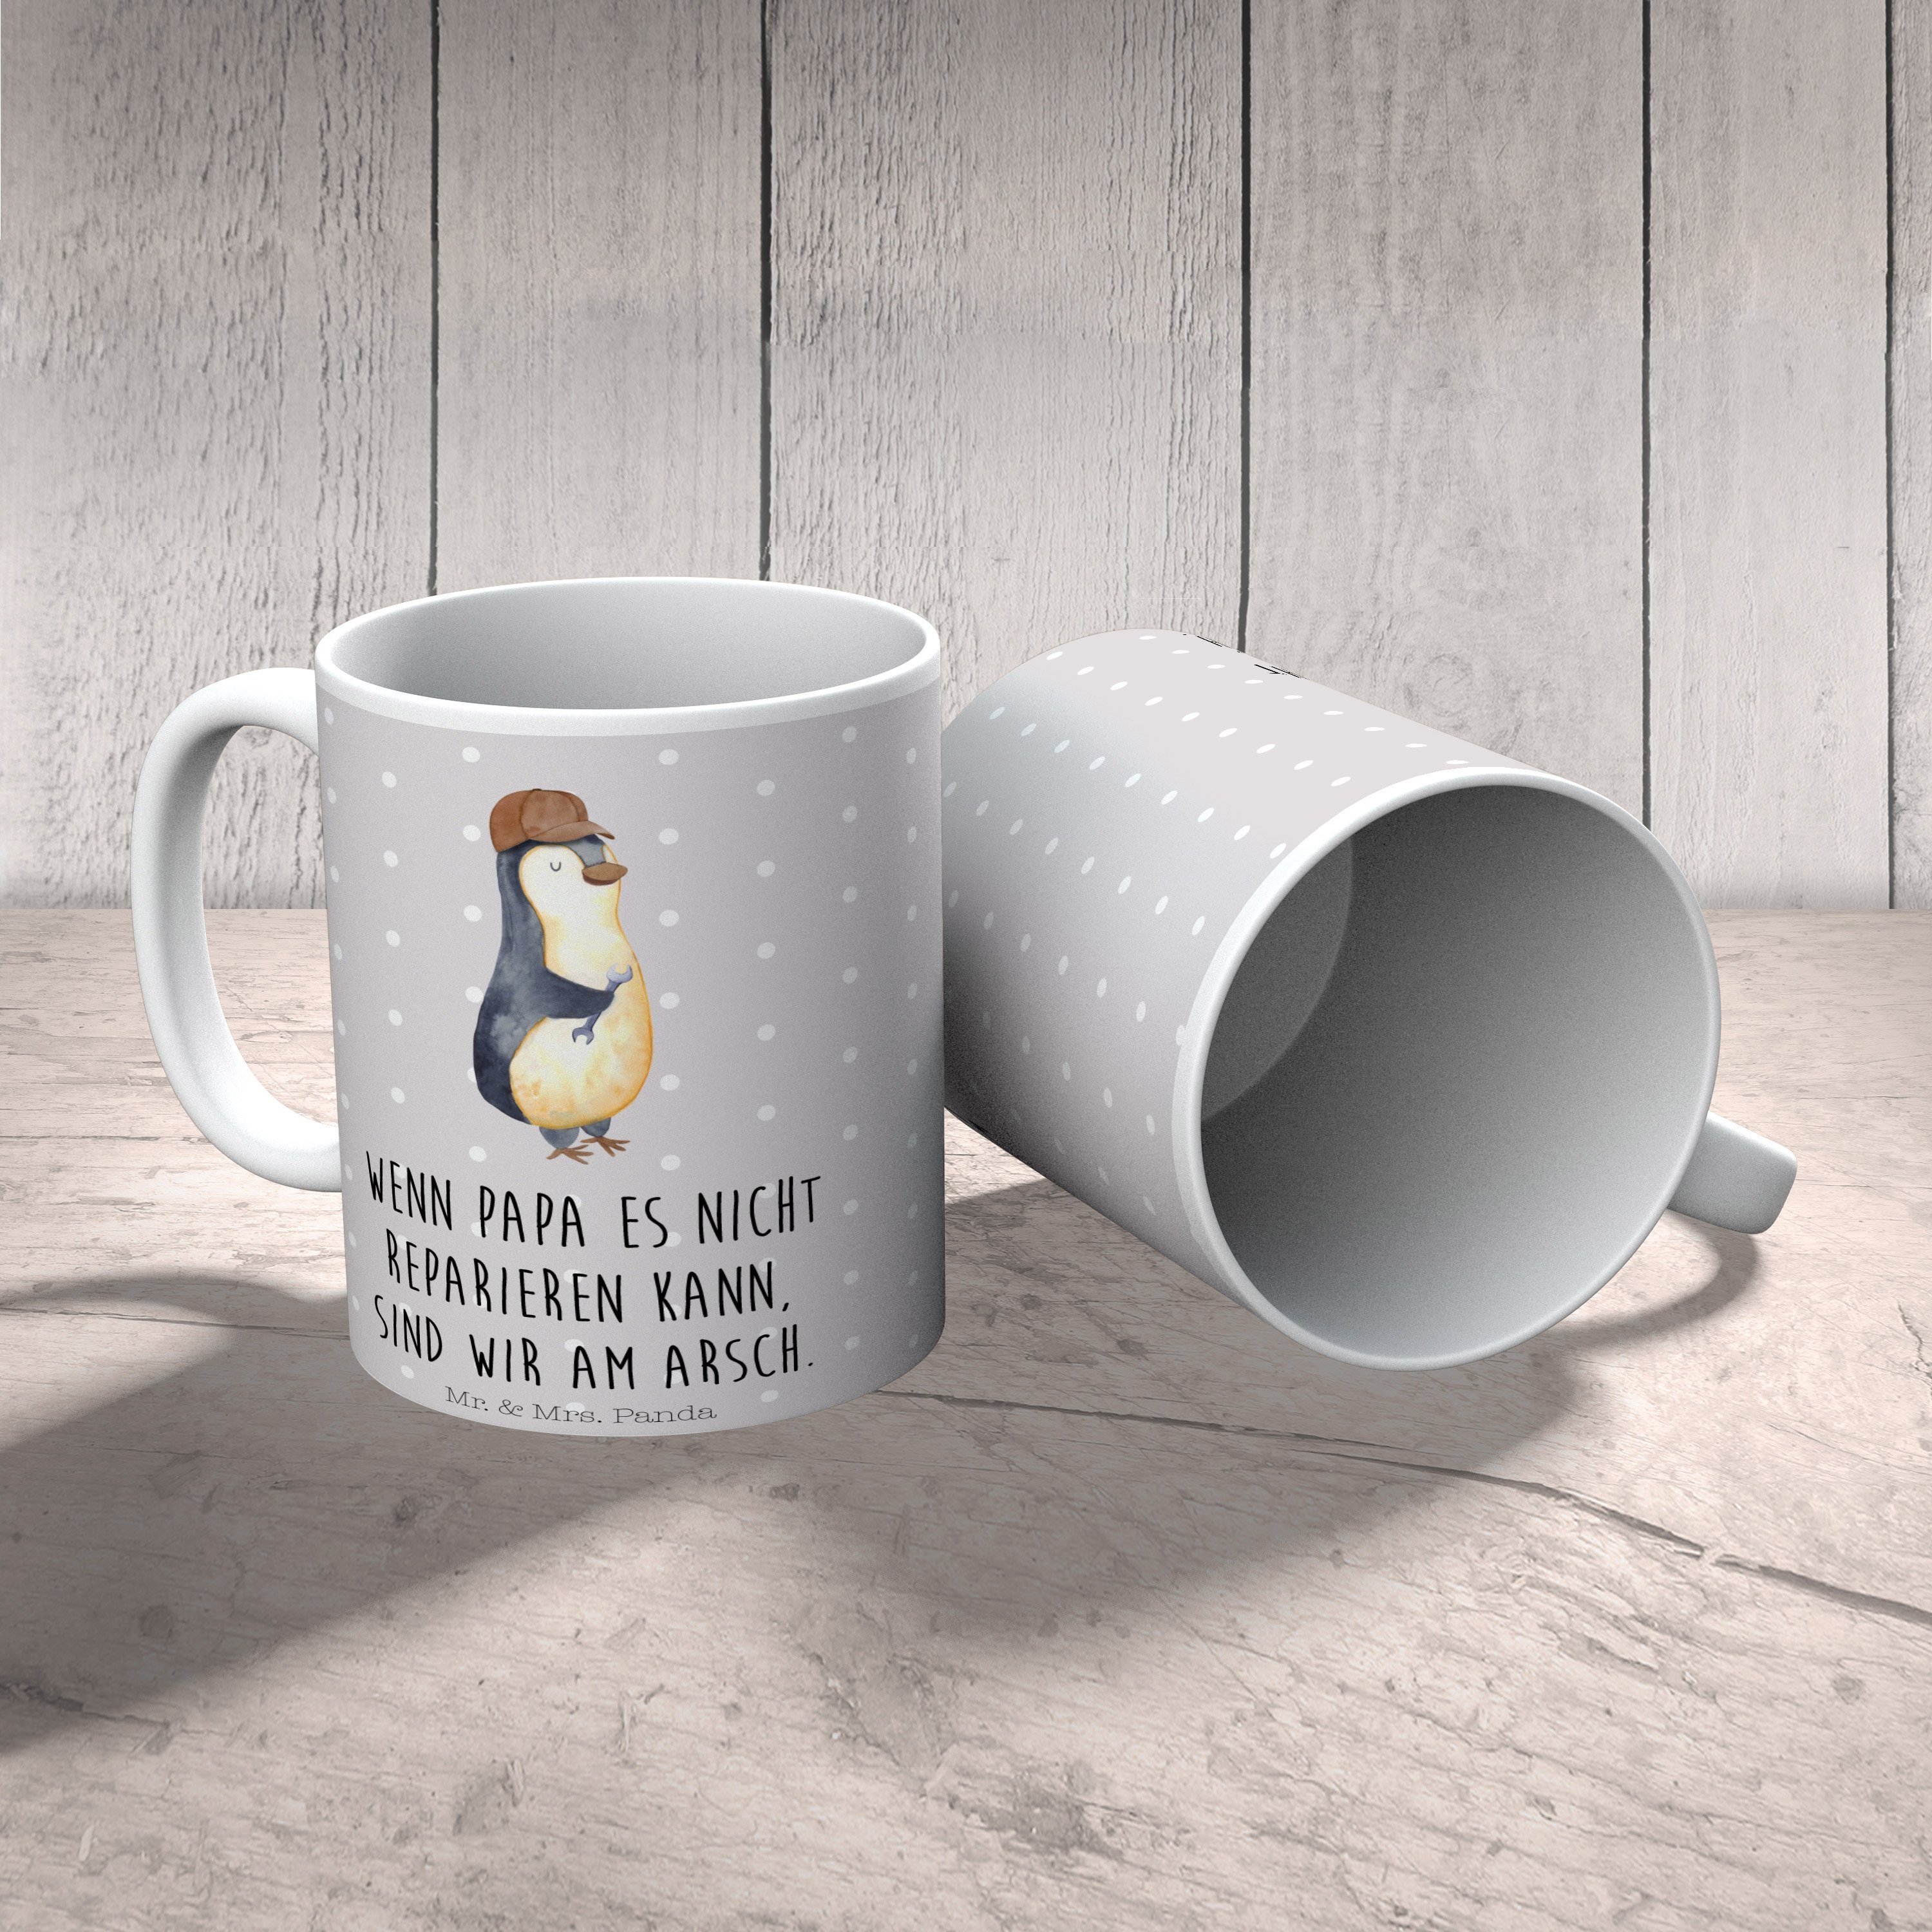 Mr. & Mrs. Panda Tasse Pinguin mit Schraubenschlüssel - Grau Pastell - Geschenk, Keramiktass, Keramik | Tassen